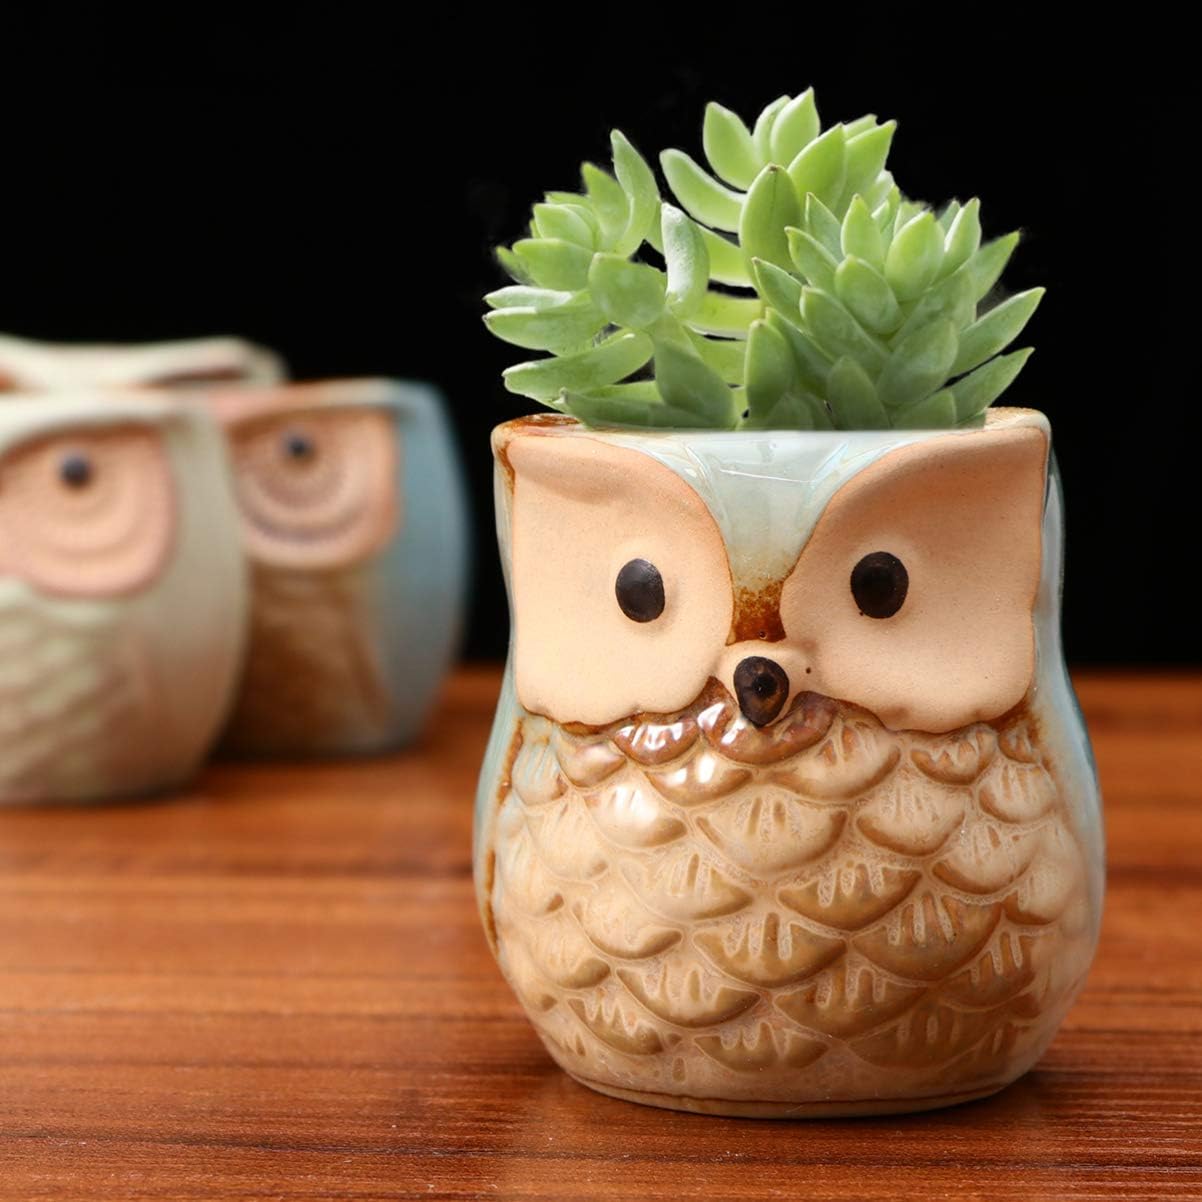 6pc set Tray Decor House Plants Owl Flower Pot Mini Ceramic Pots Animal Succulent Planter Pots